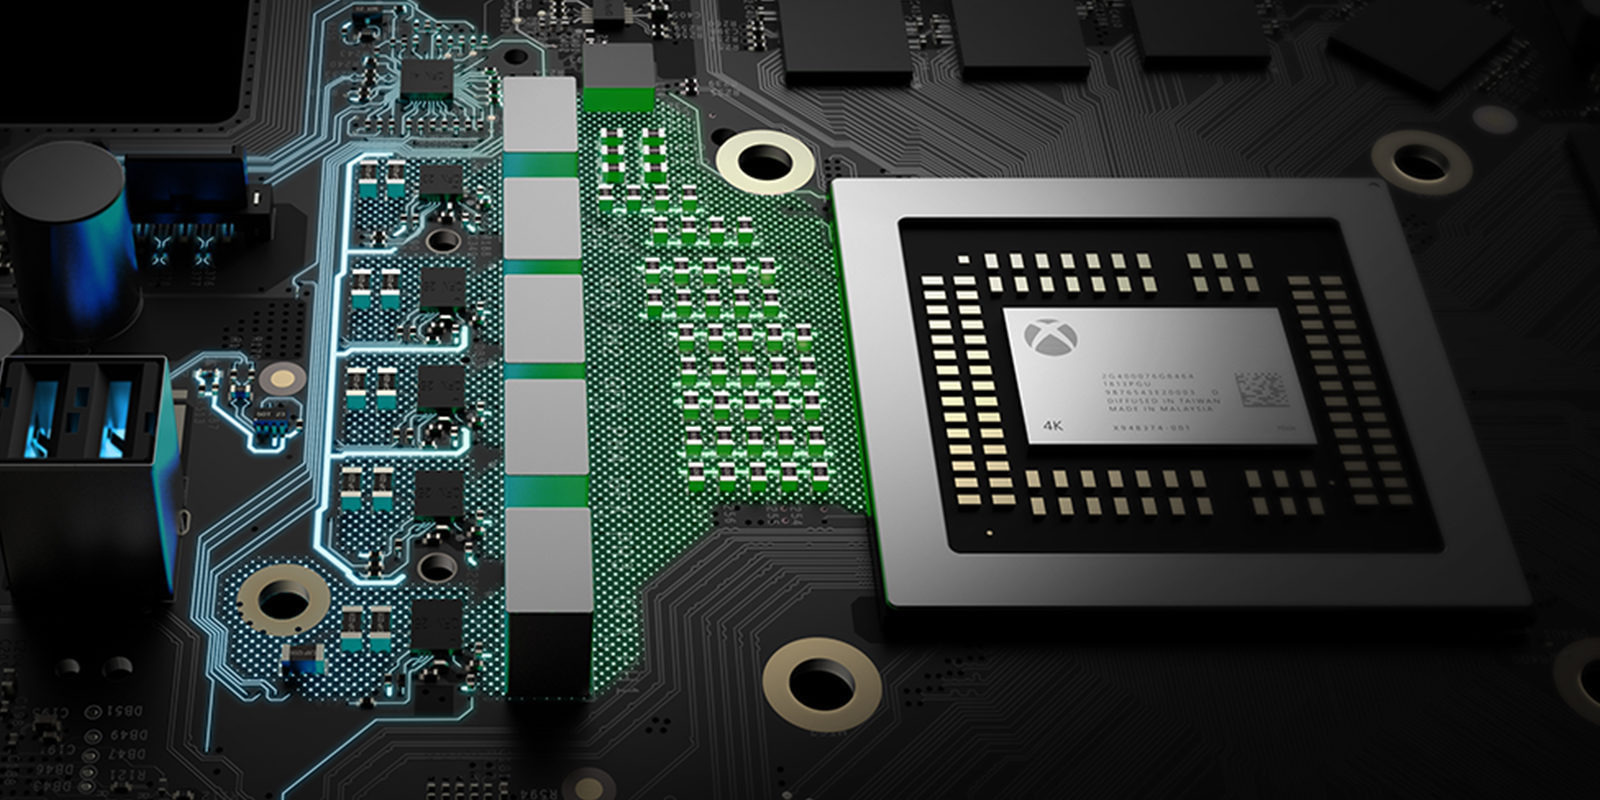 Xbox Project Scorpio: Especificaciones técnicos al detalle de la consola más potente del mercado